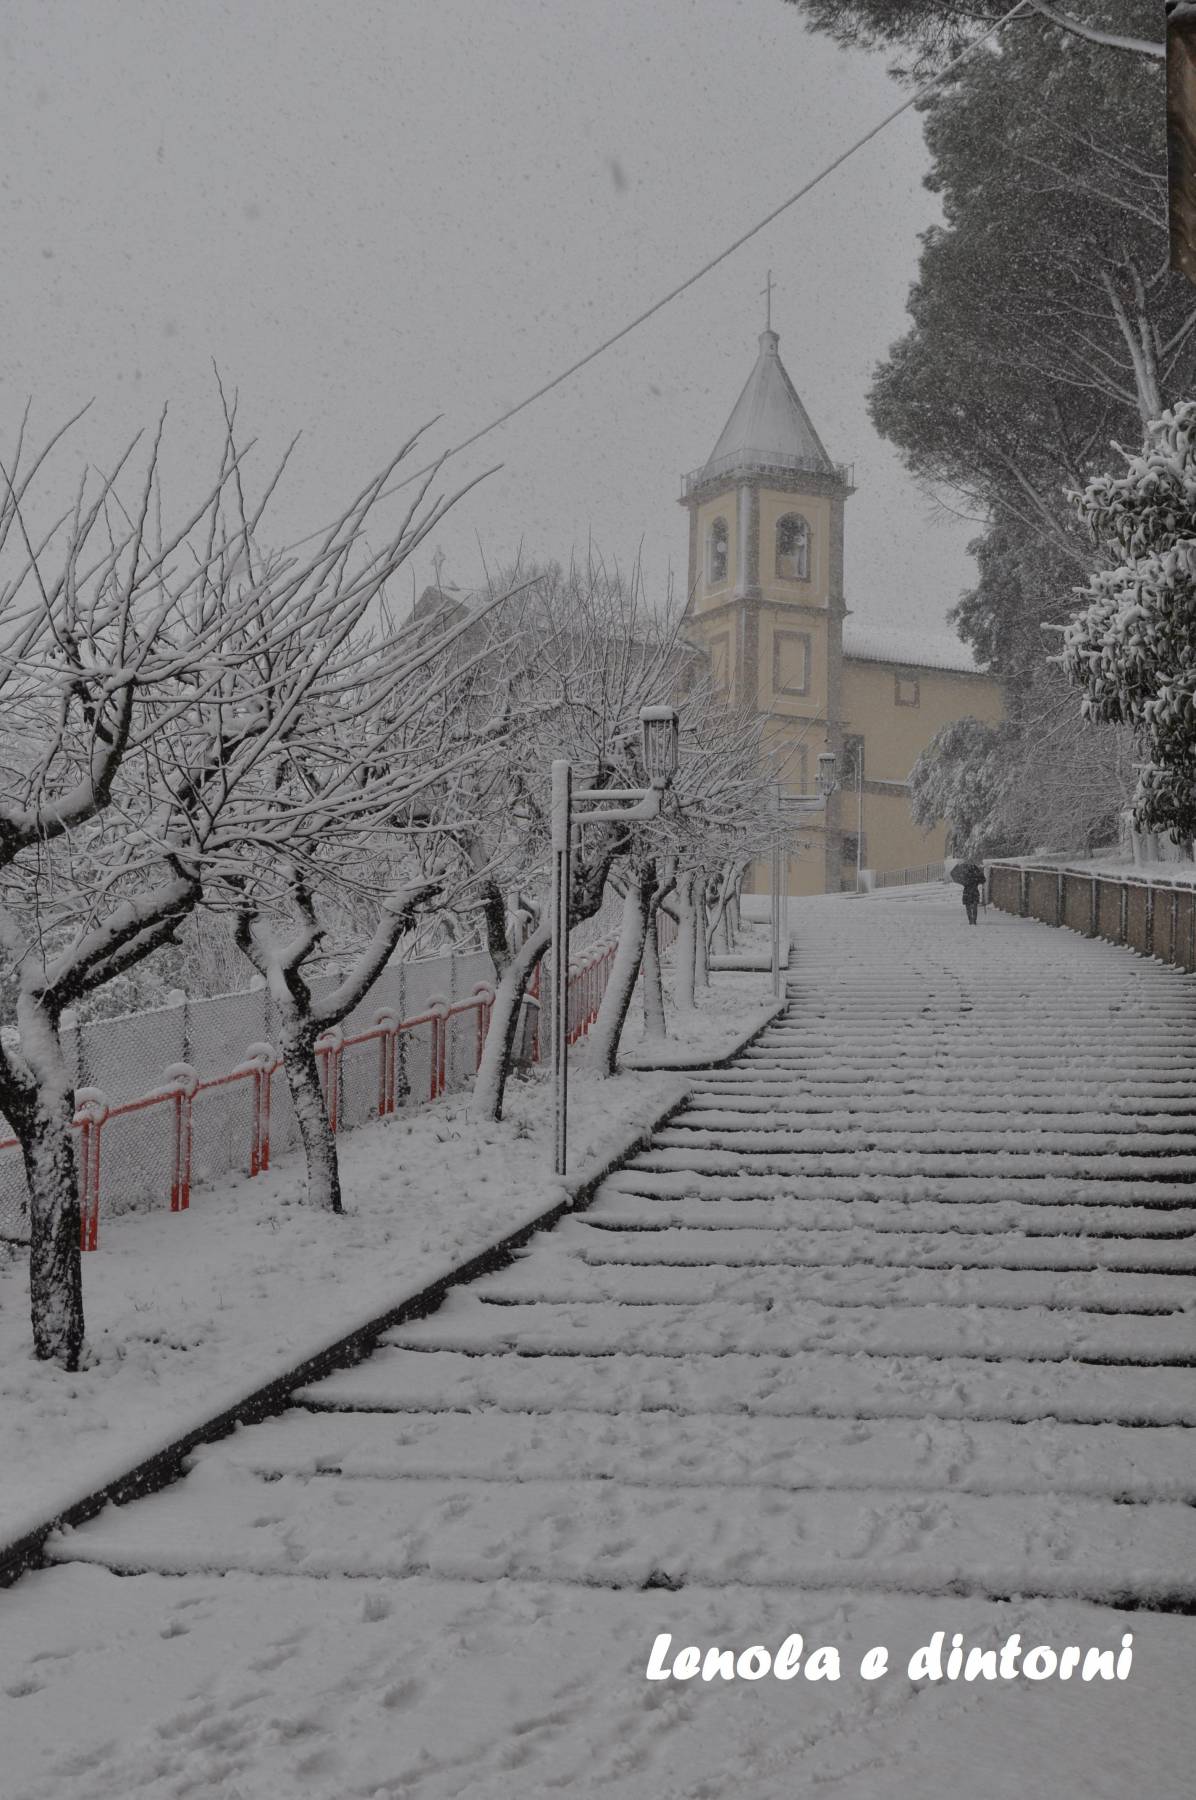 neve a Lenola, le foto più belle di lenola e dintorni, nevicata a lenola, inventa un film, lenola e dintorni